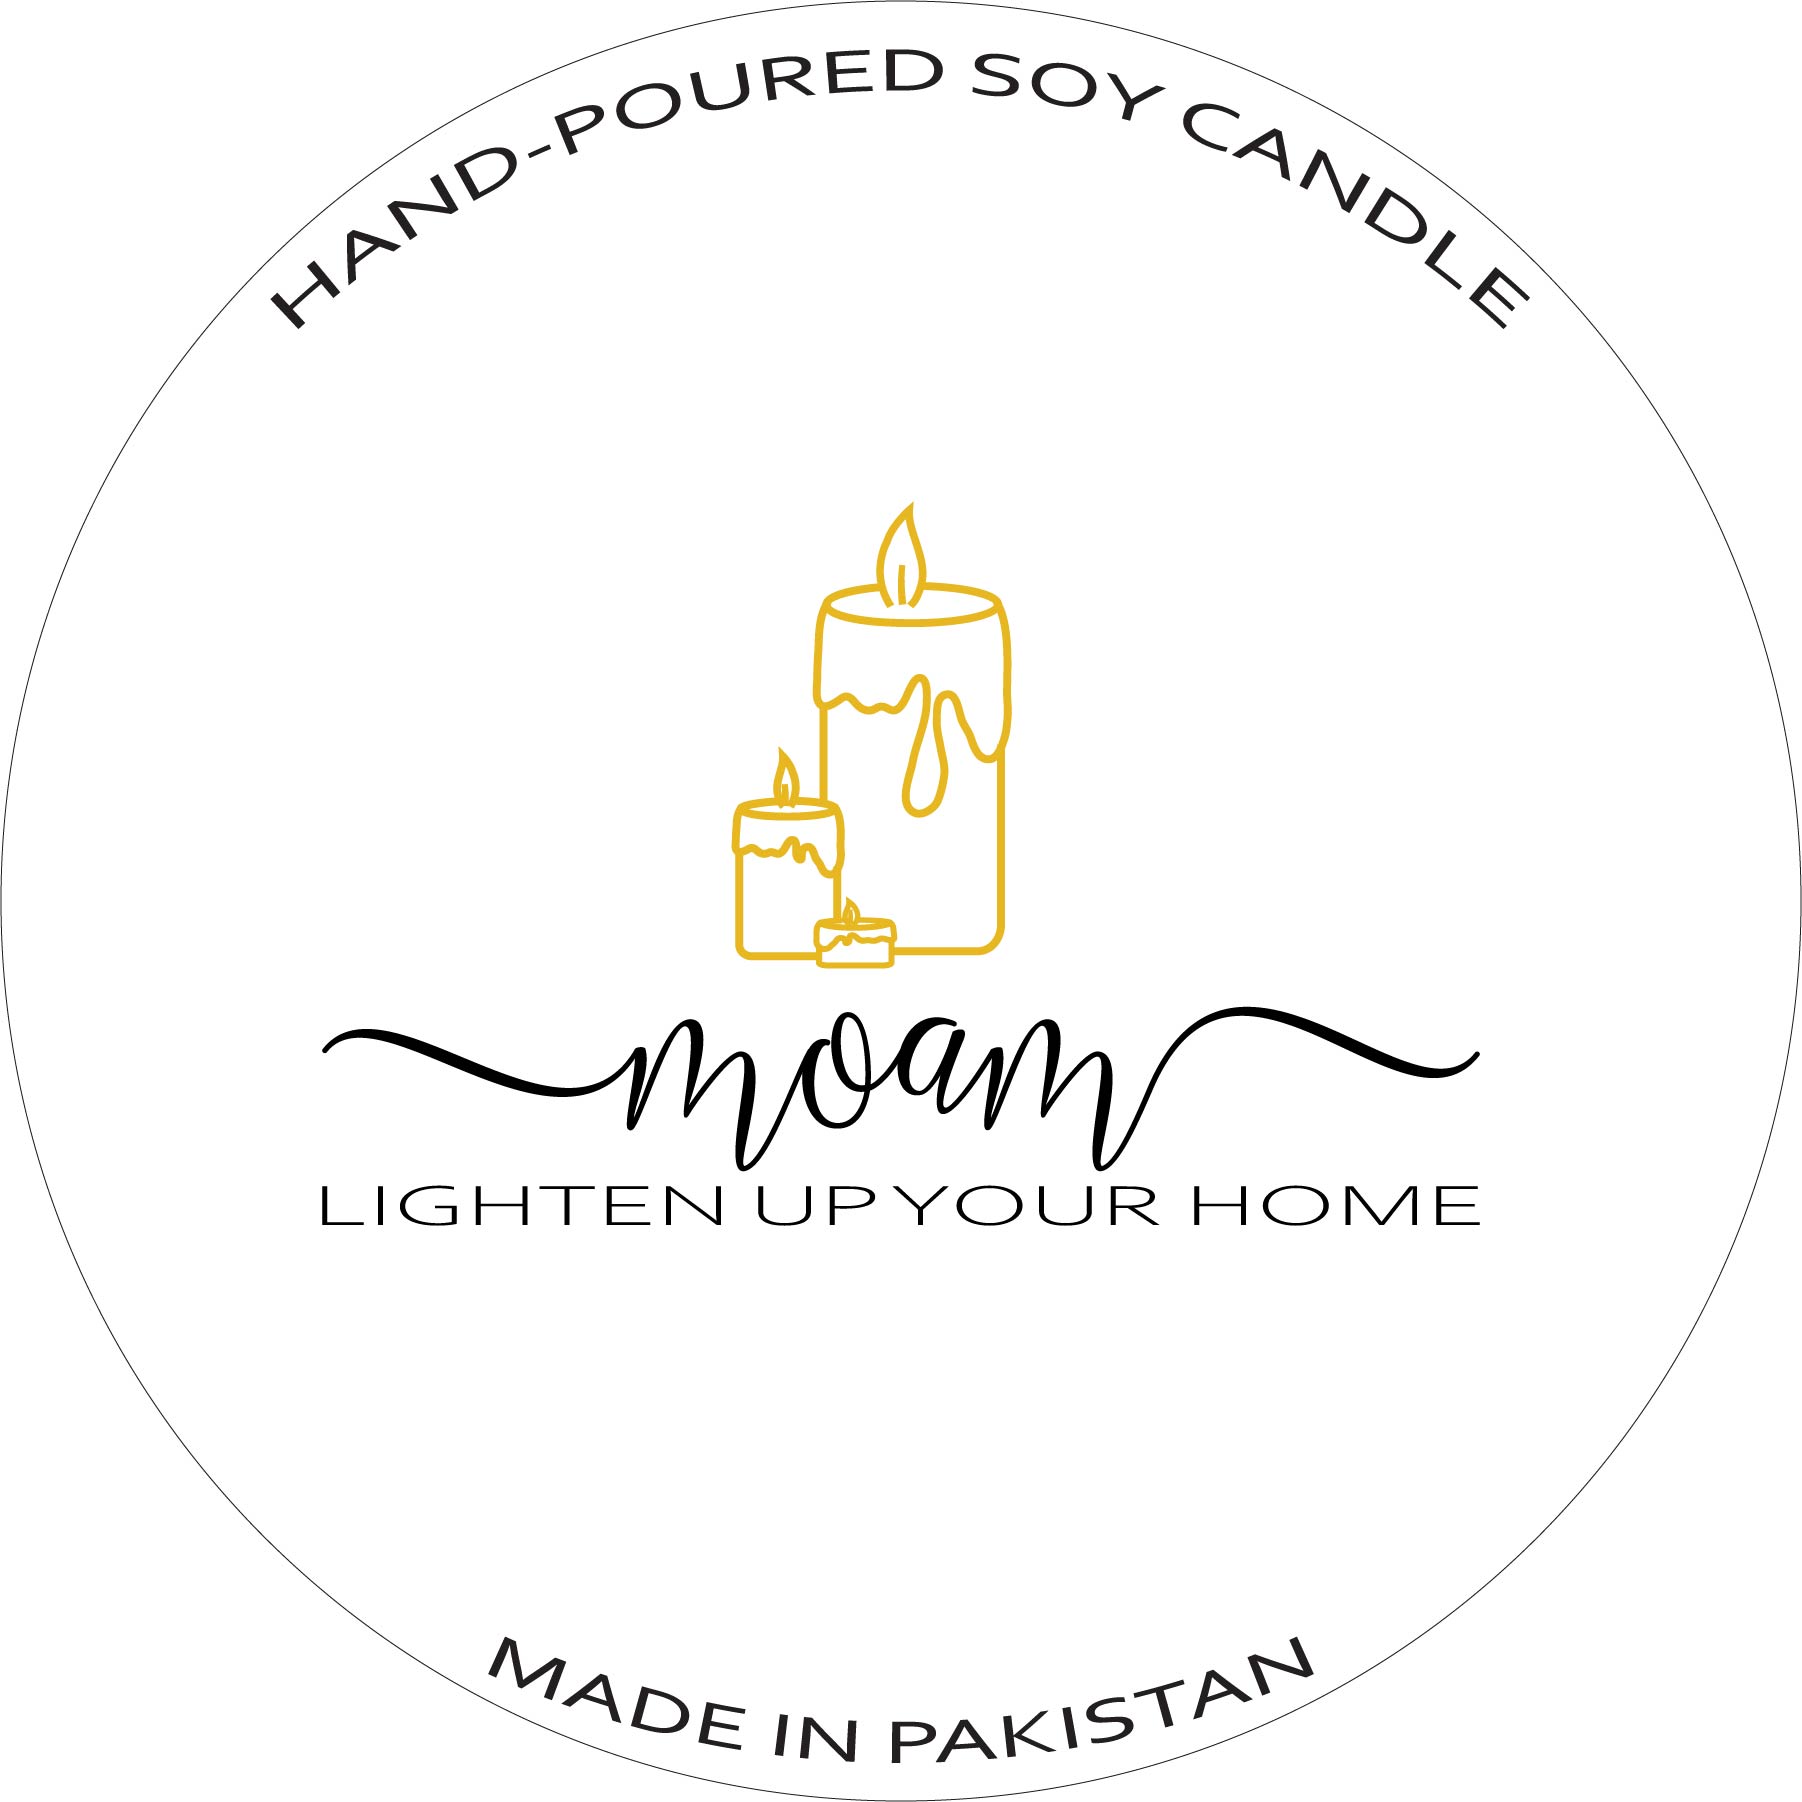 Moam-Lighten Up Your Home